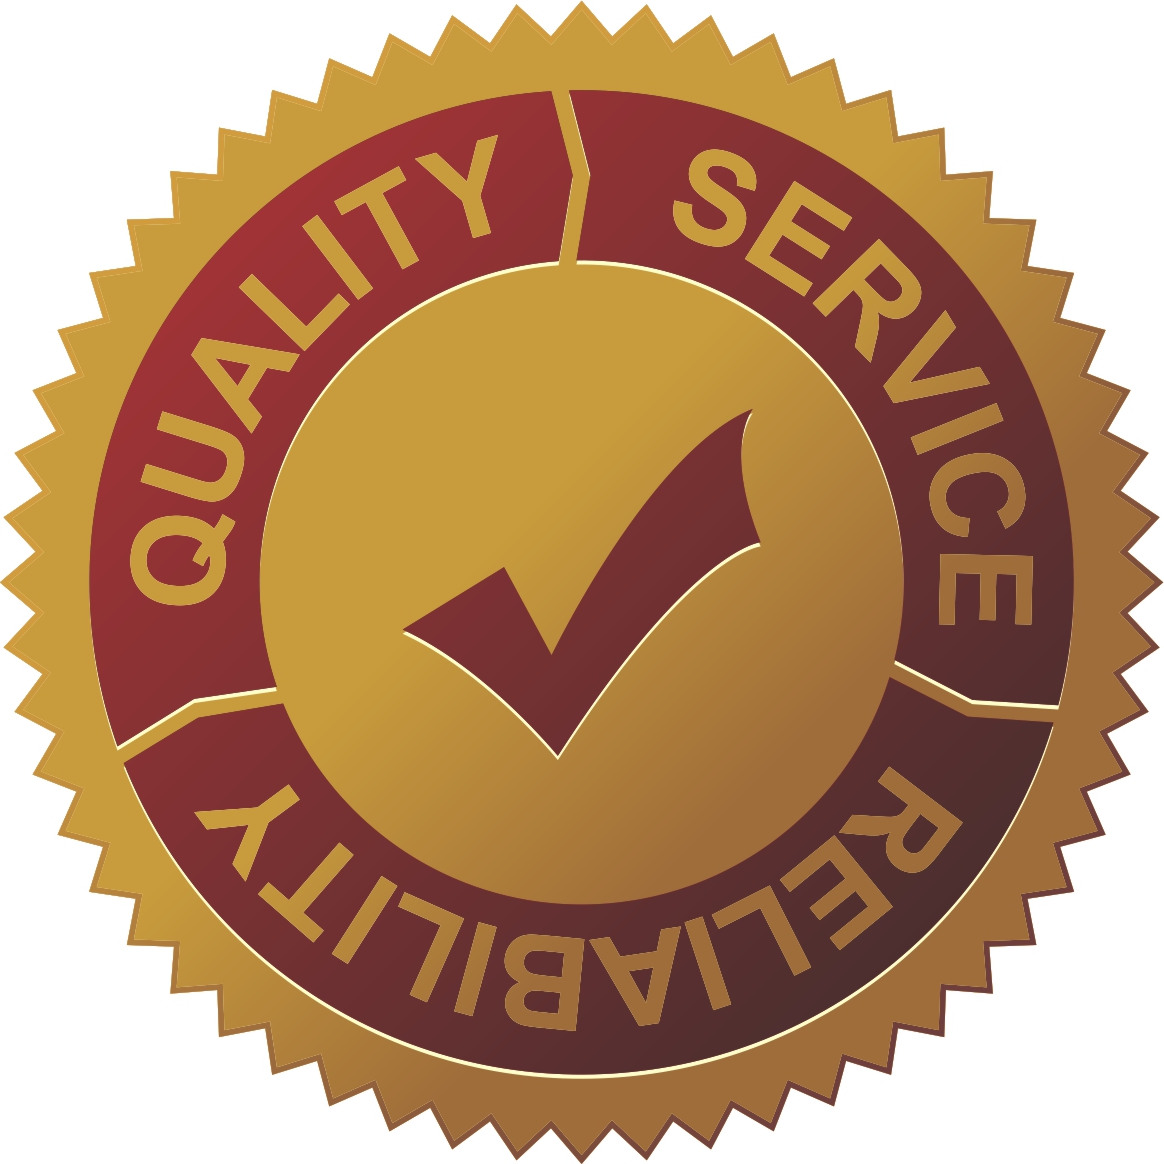 Наклейка гарантия. Высокое качество продукции. Значок качества. Надежность качество иконка. Гарантия качество надежность.